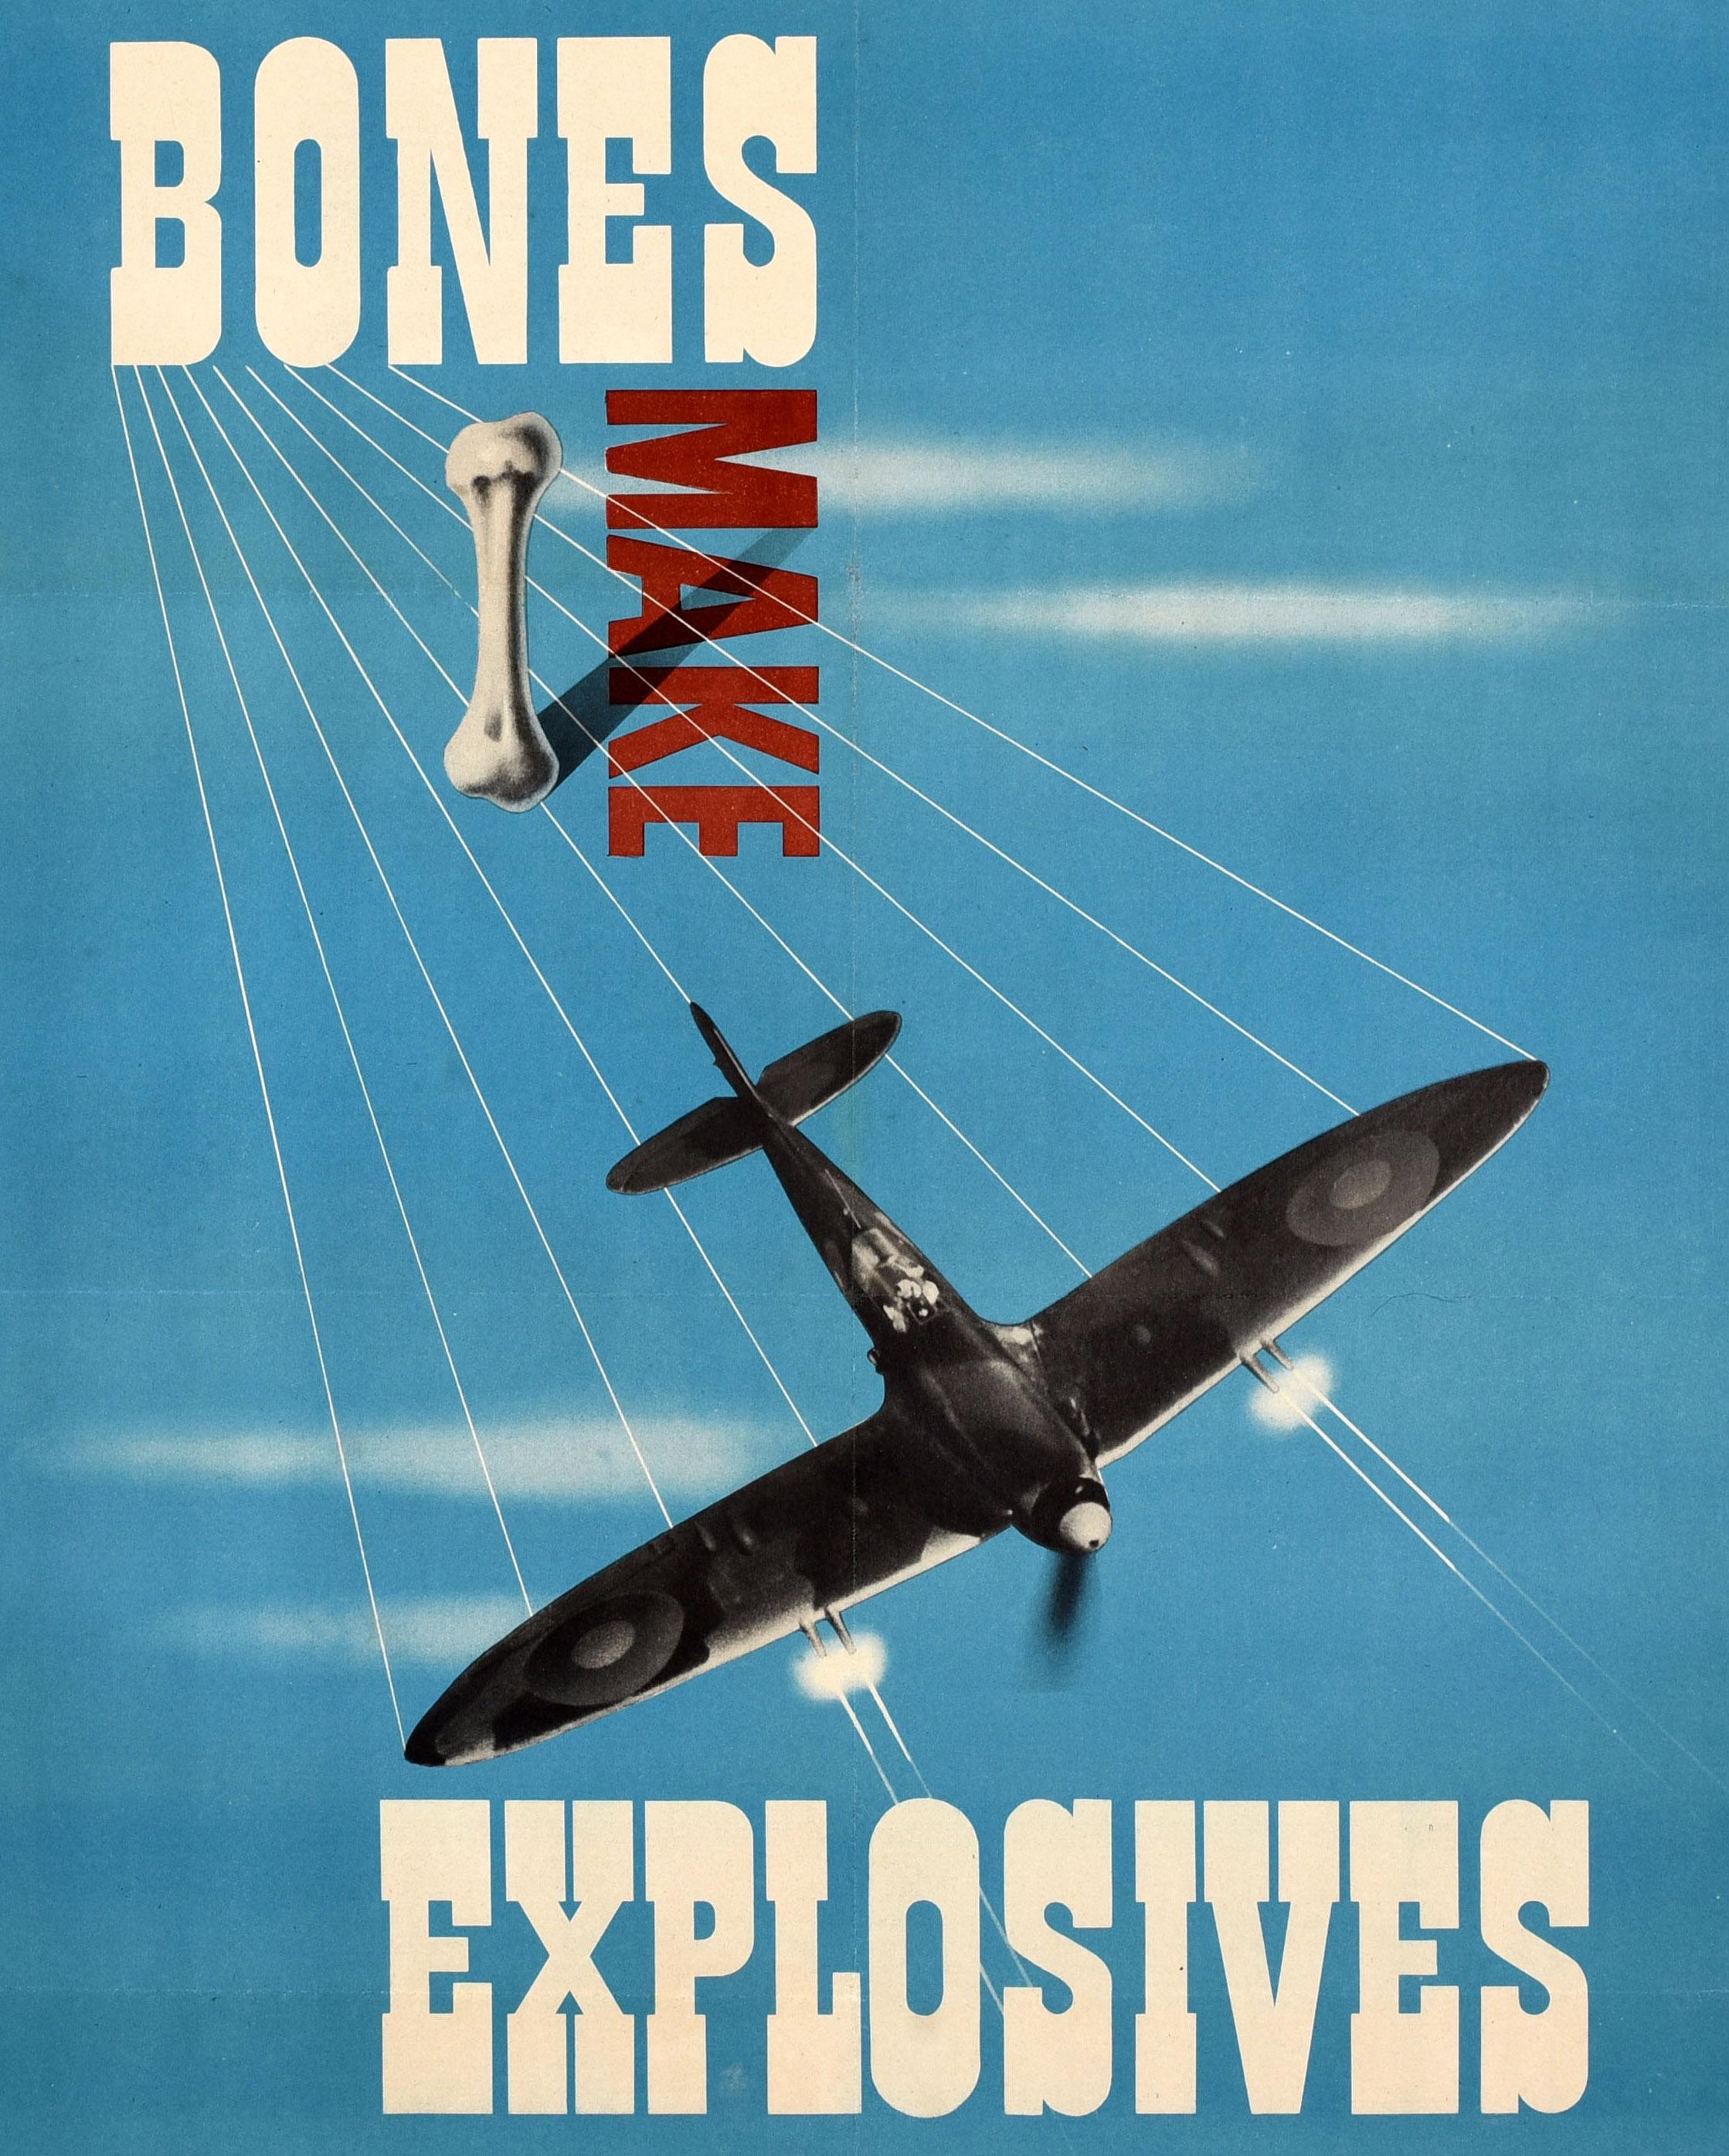 Originalrecyclingplakat des Zweiten Weltkriegs - Bones Make Explosives Put Out All Bones For Salvage - mit einem großartigen modernistischen Grafikdesign von Reginald Mount (1906-1979) eines RAF Royal Air Force Spitfire-Flugzeugs, das seine